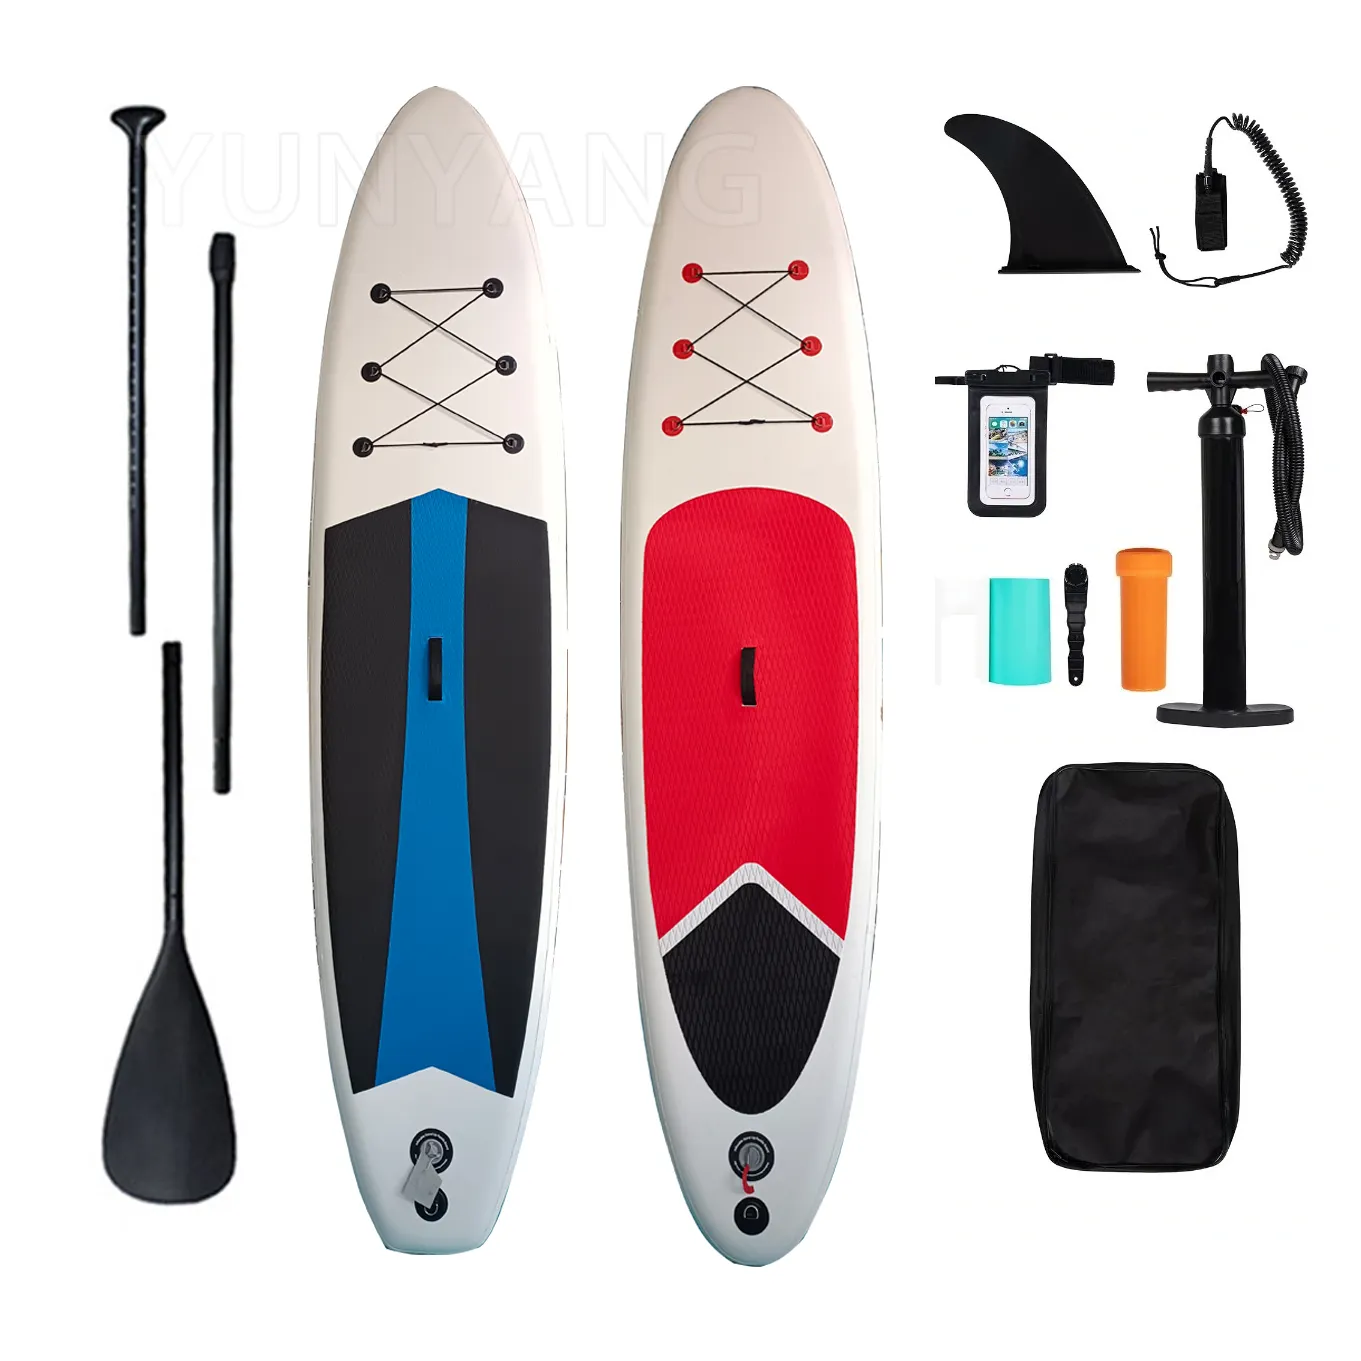 Tabla de Paddle Fishing inflable para Sup, equipo de juego de agua para tablas de surf, deportes acuáticos